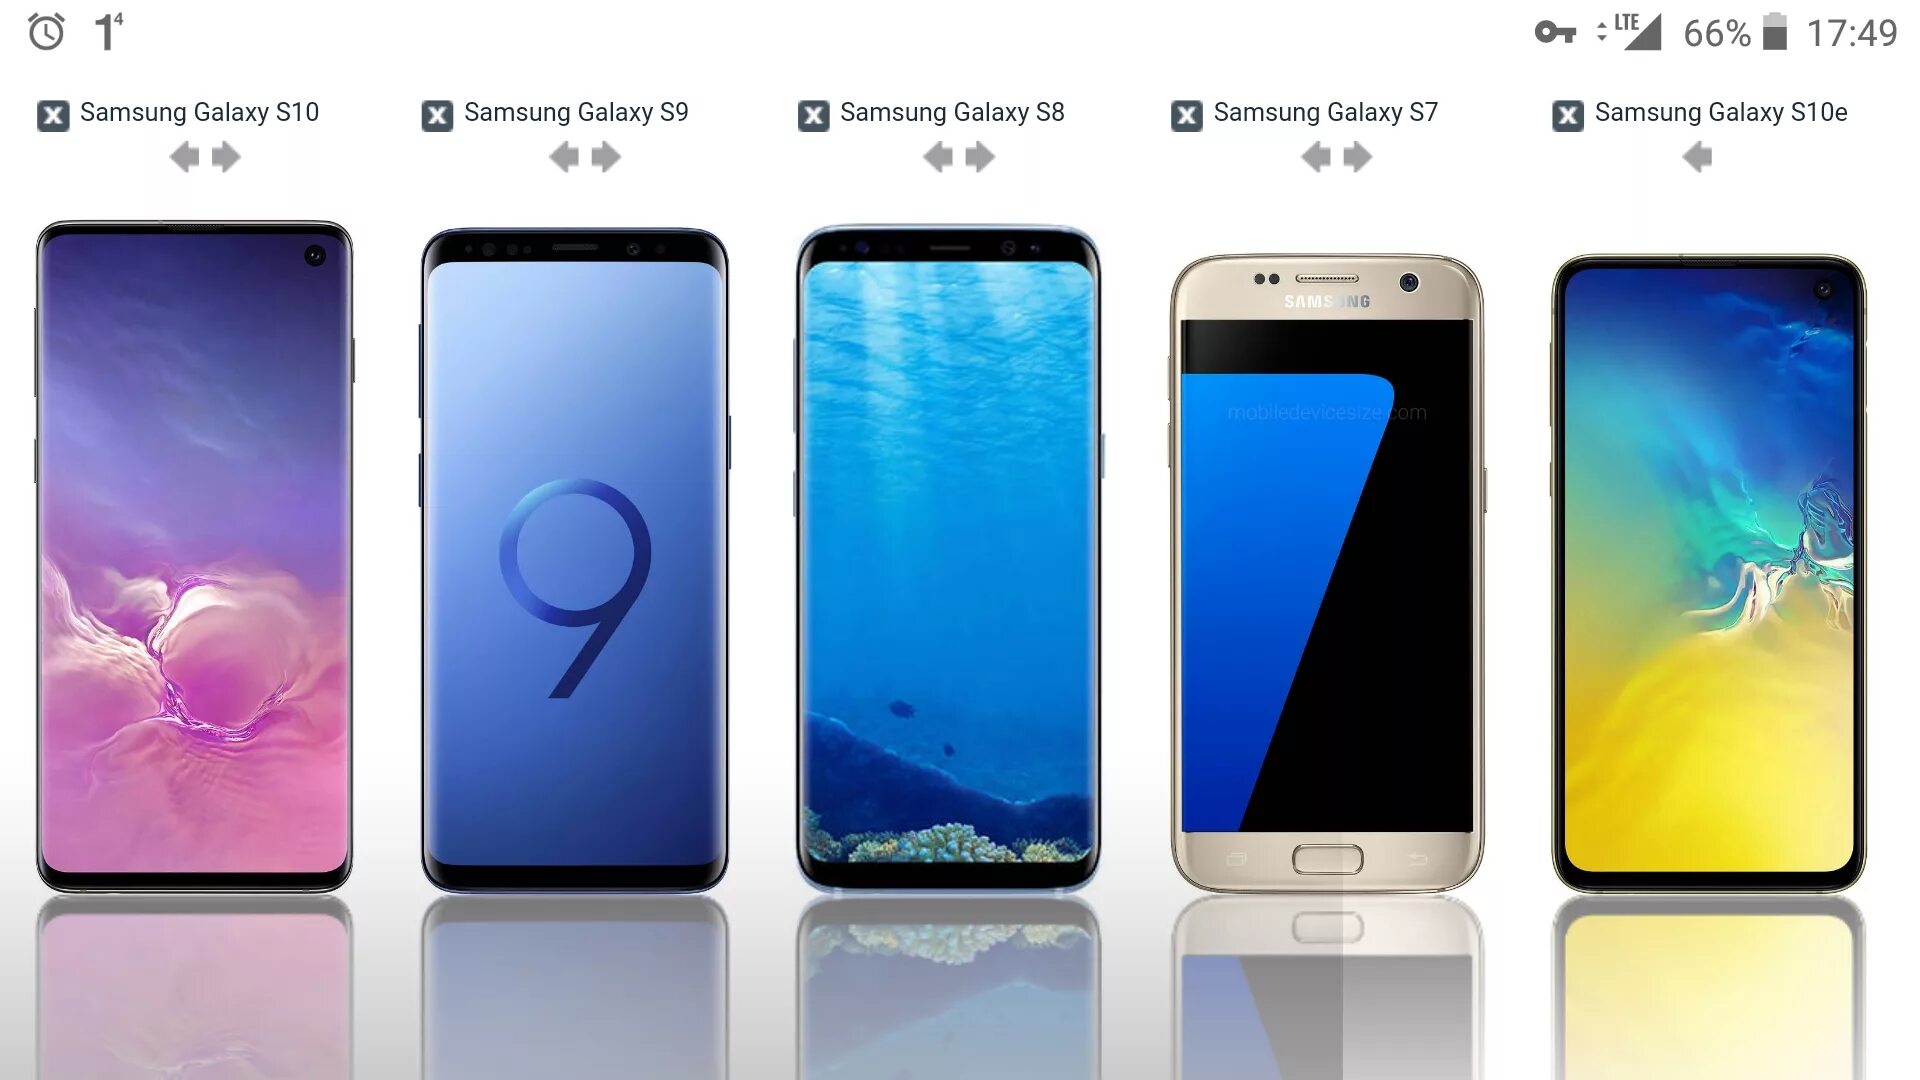 5g samsung s8. Samsung Galaxy s8 s10. Samsung Galaxy s8 s9 s10. Samsung Galaxy s10 Размеры. Samsung Galaxy s10e габариты.